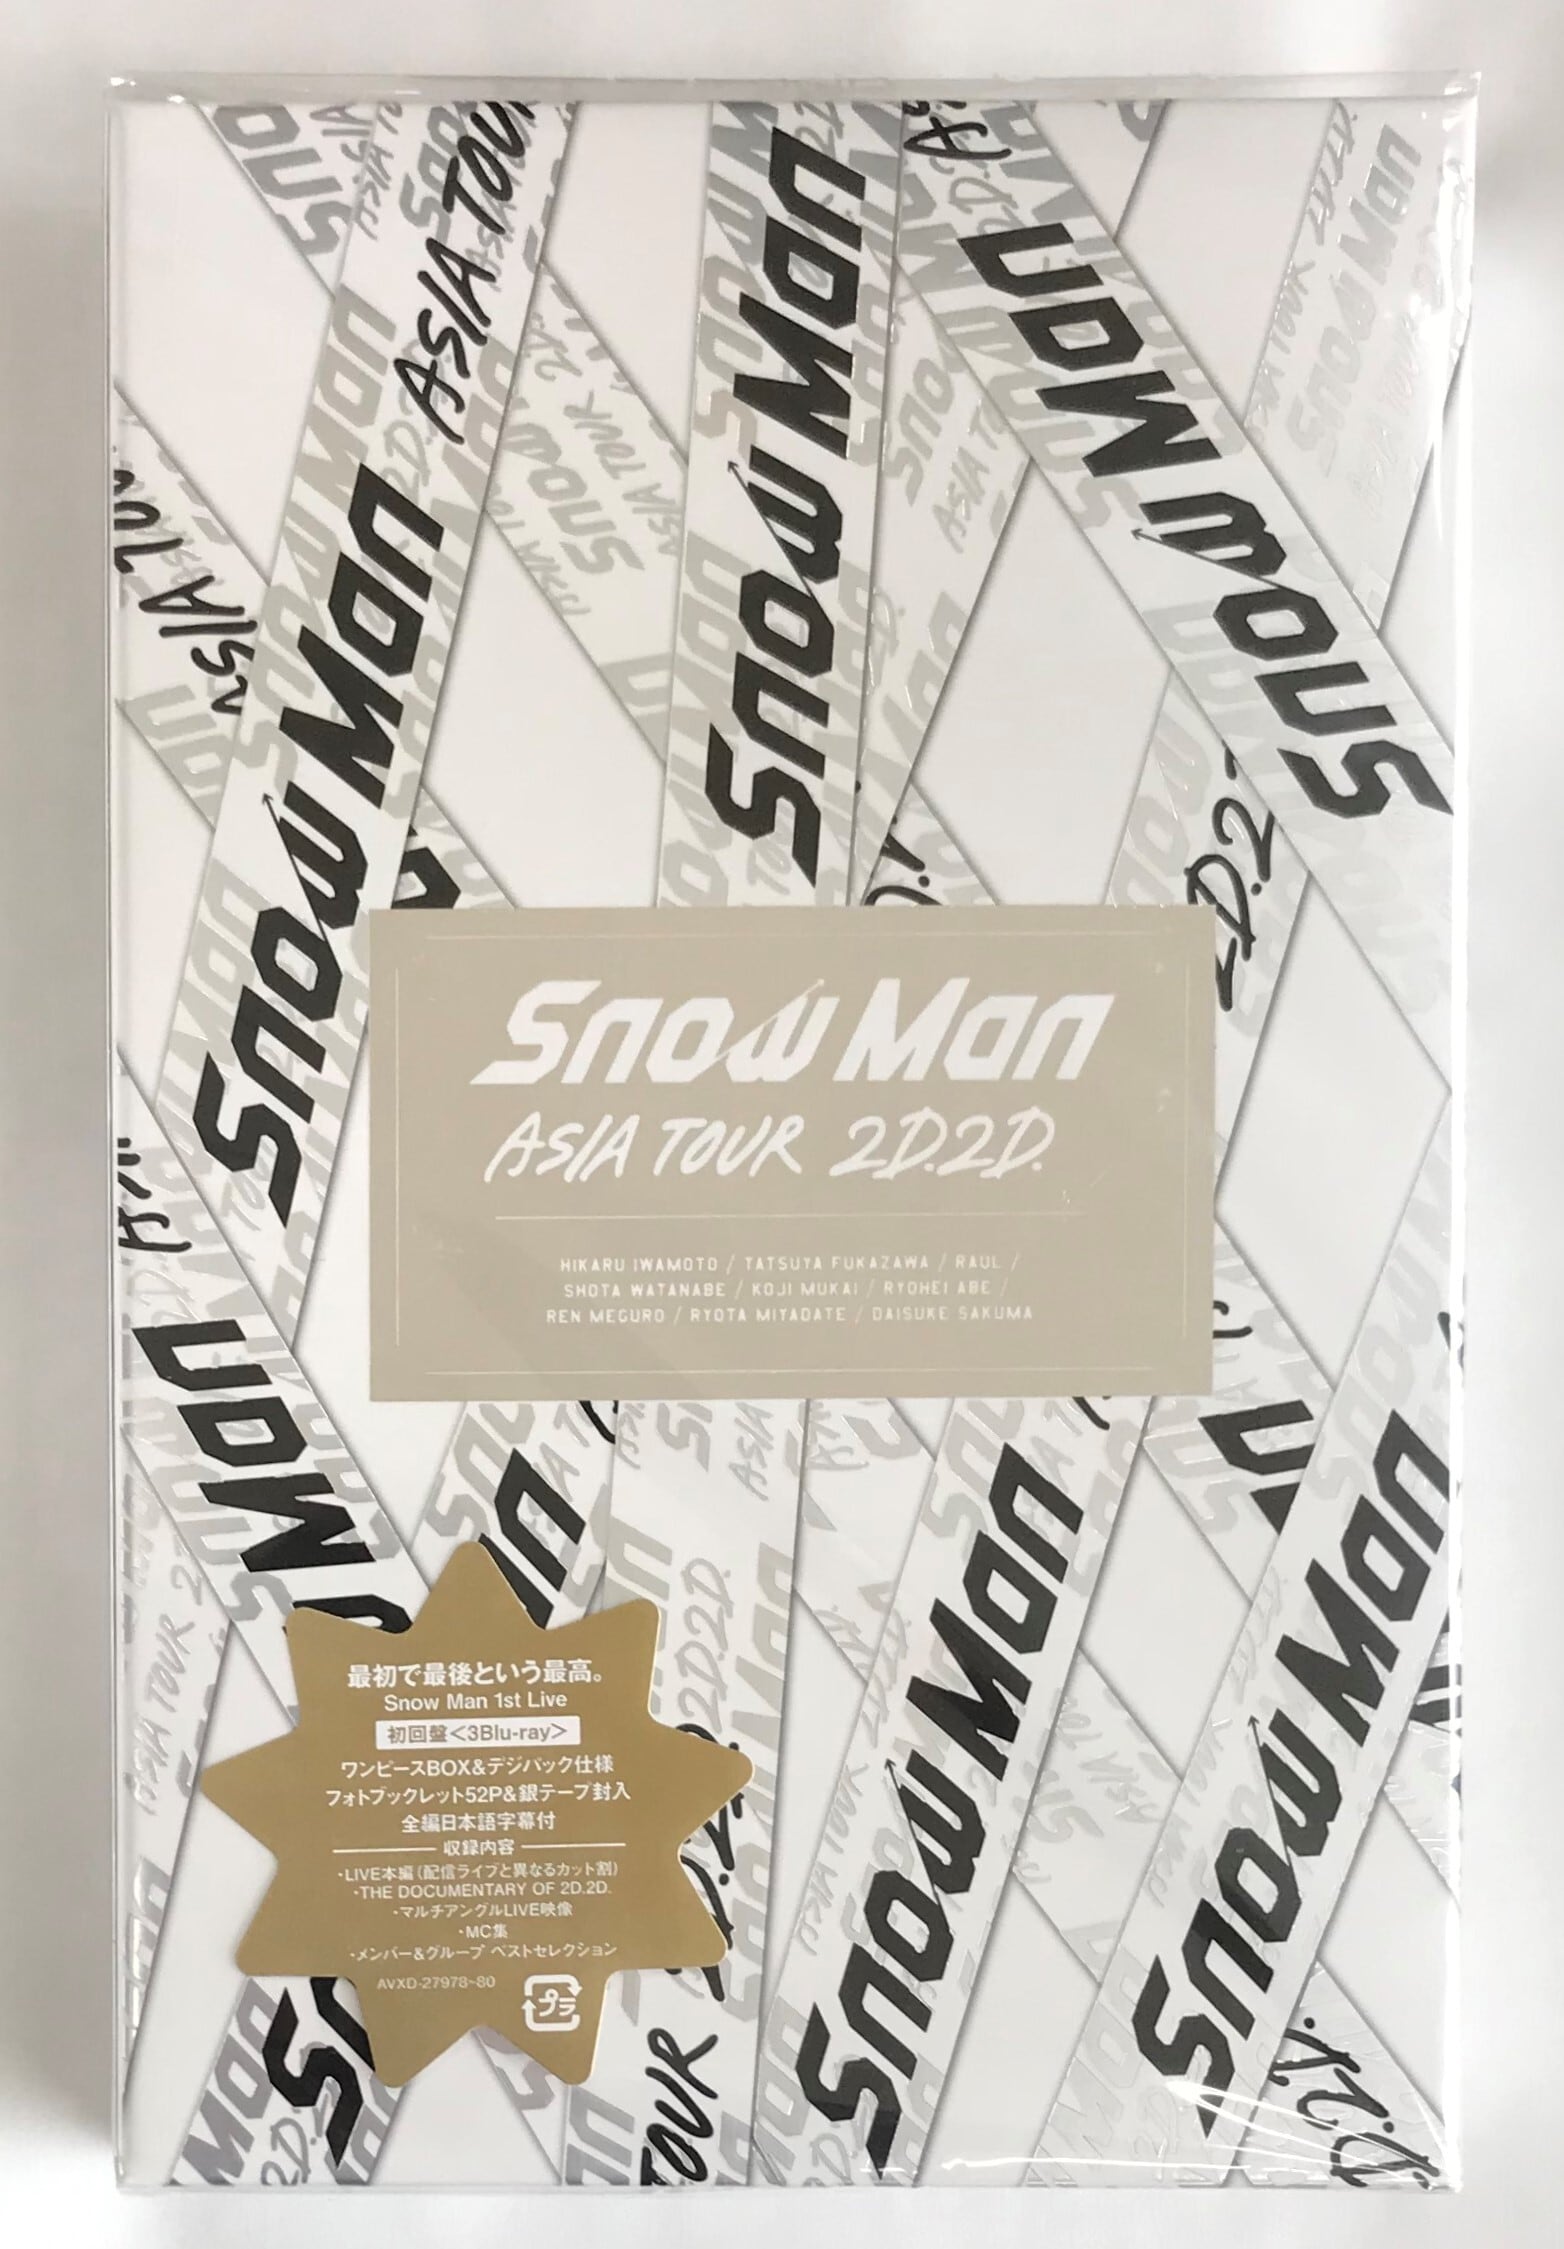 SnowMan ASIA TOUR 2D2D Blu-ray 初回盤